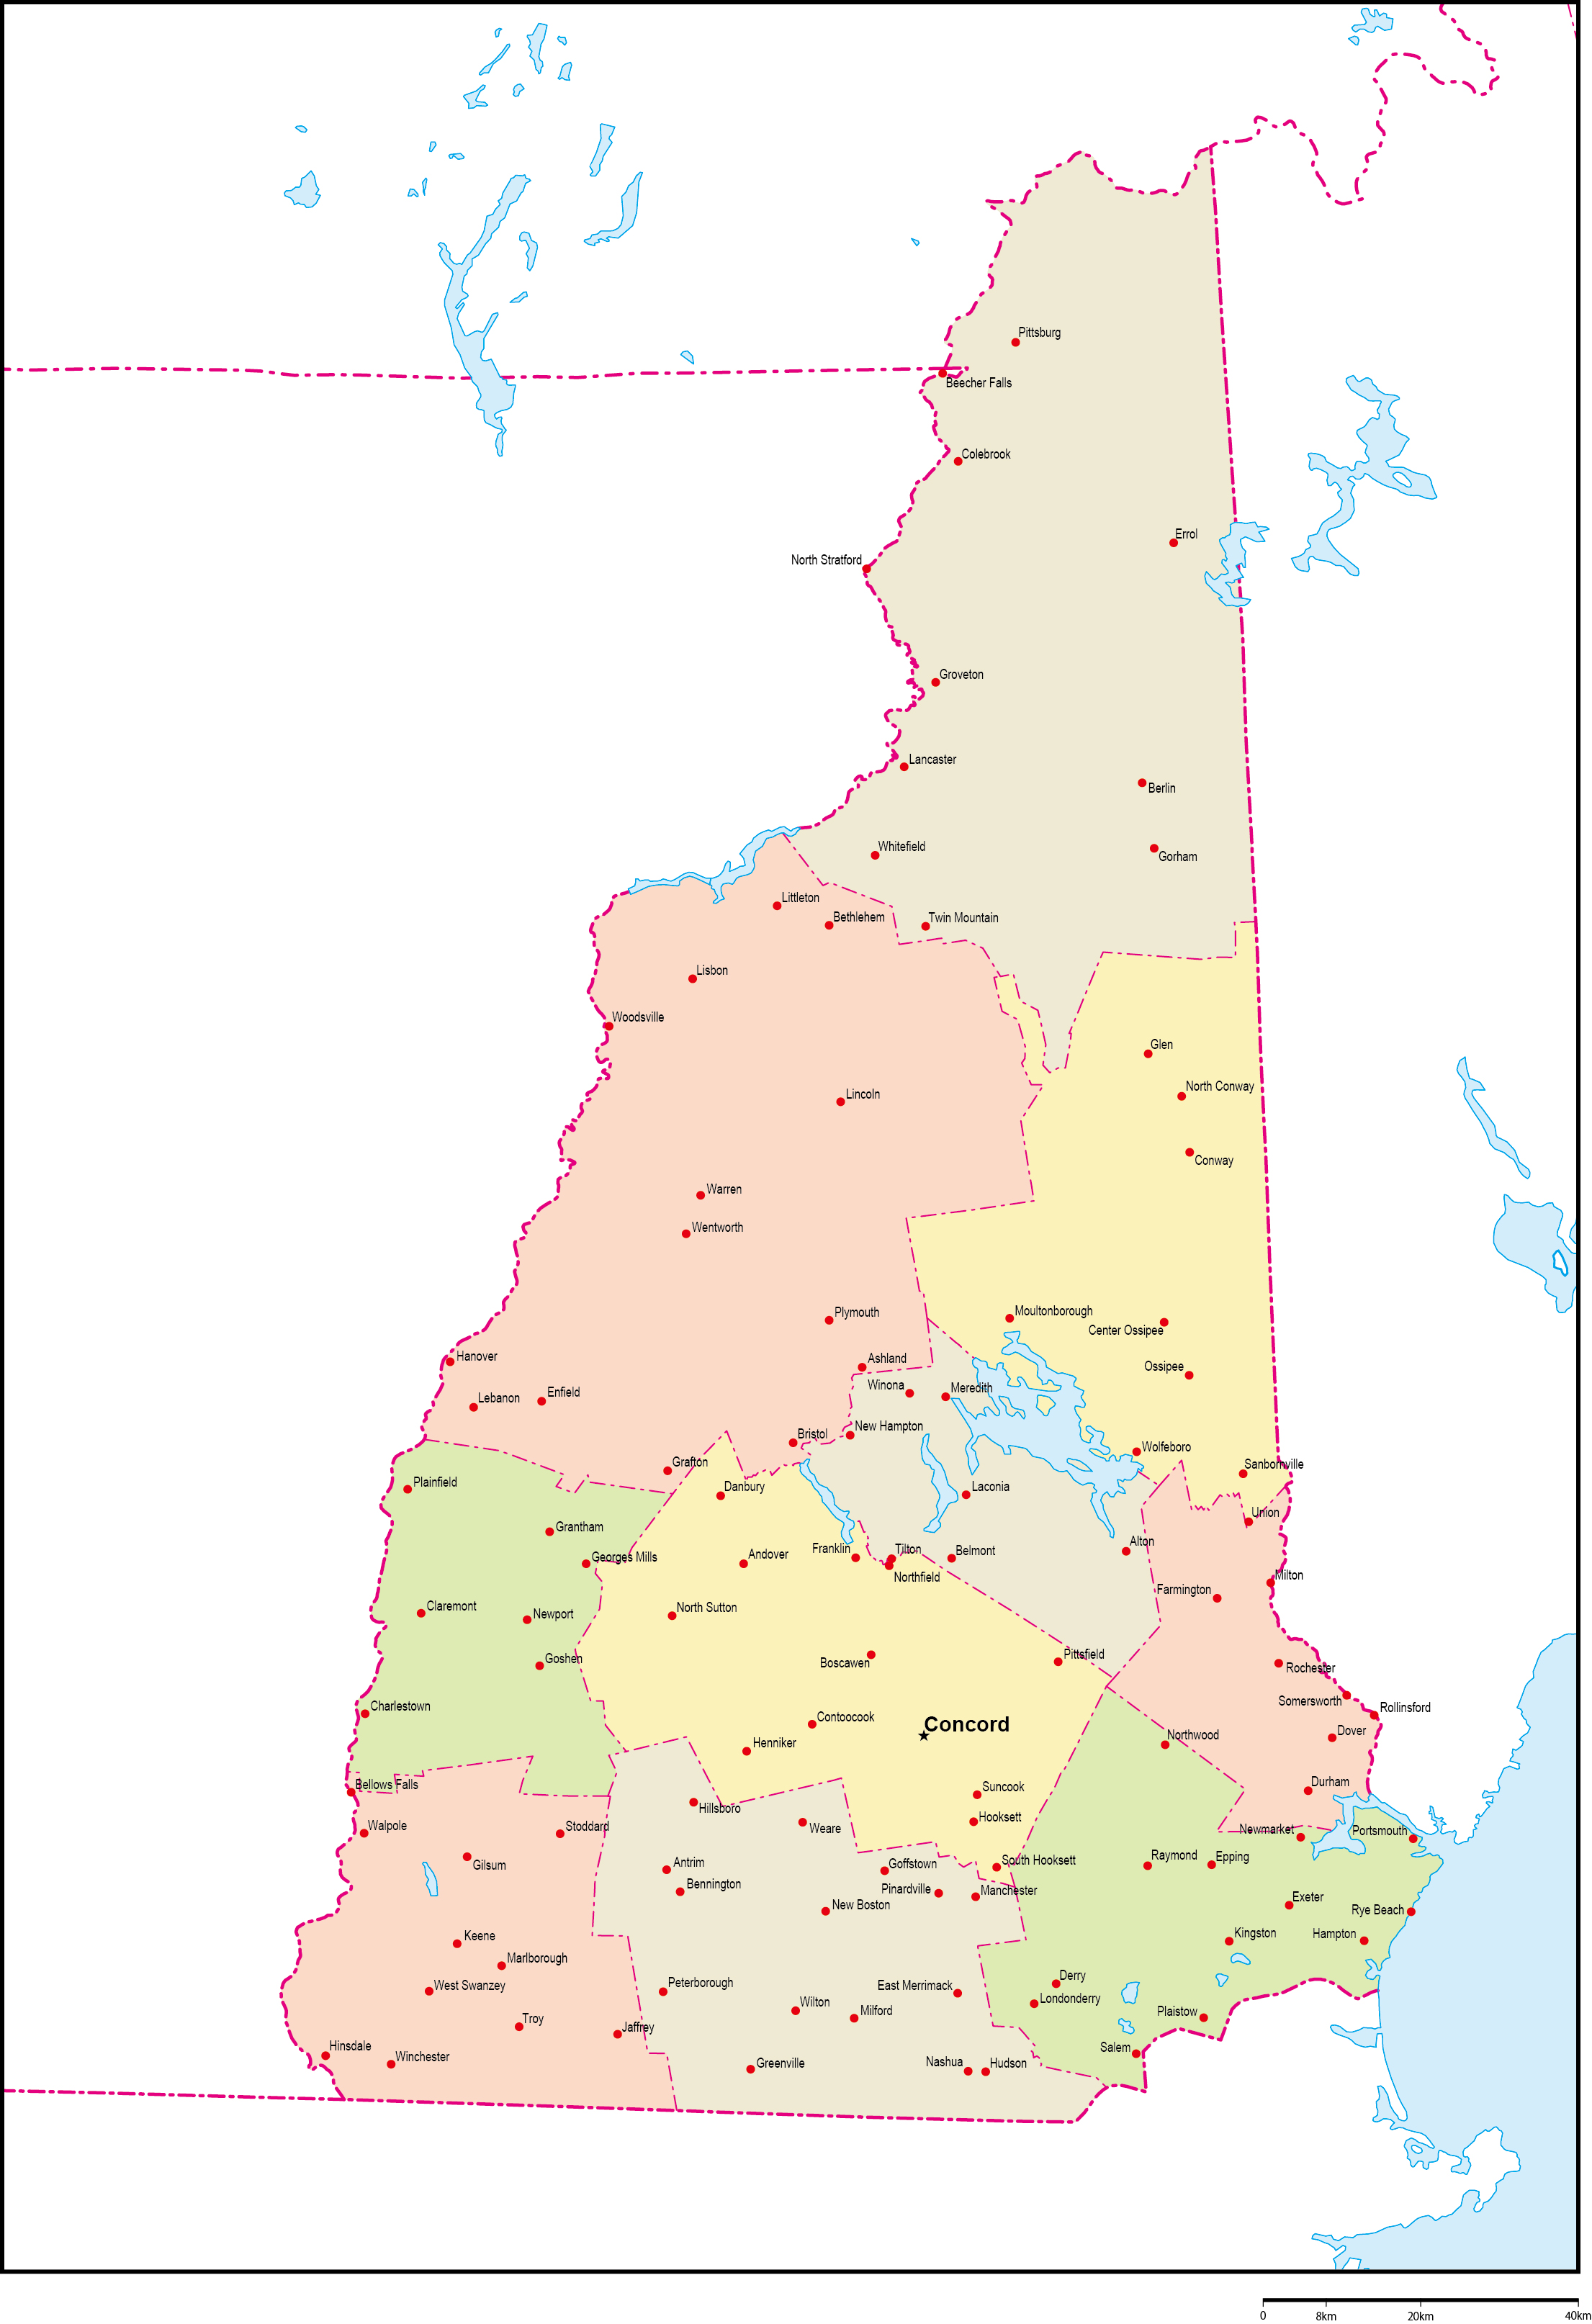 ニューハンプシャー州郡色分け地図州都・主な都市あり(英語)フリーデータの画像